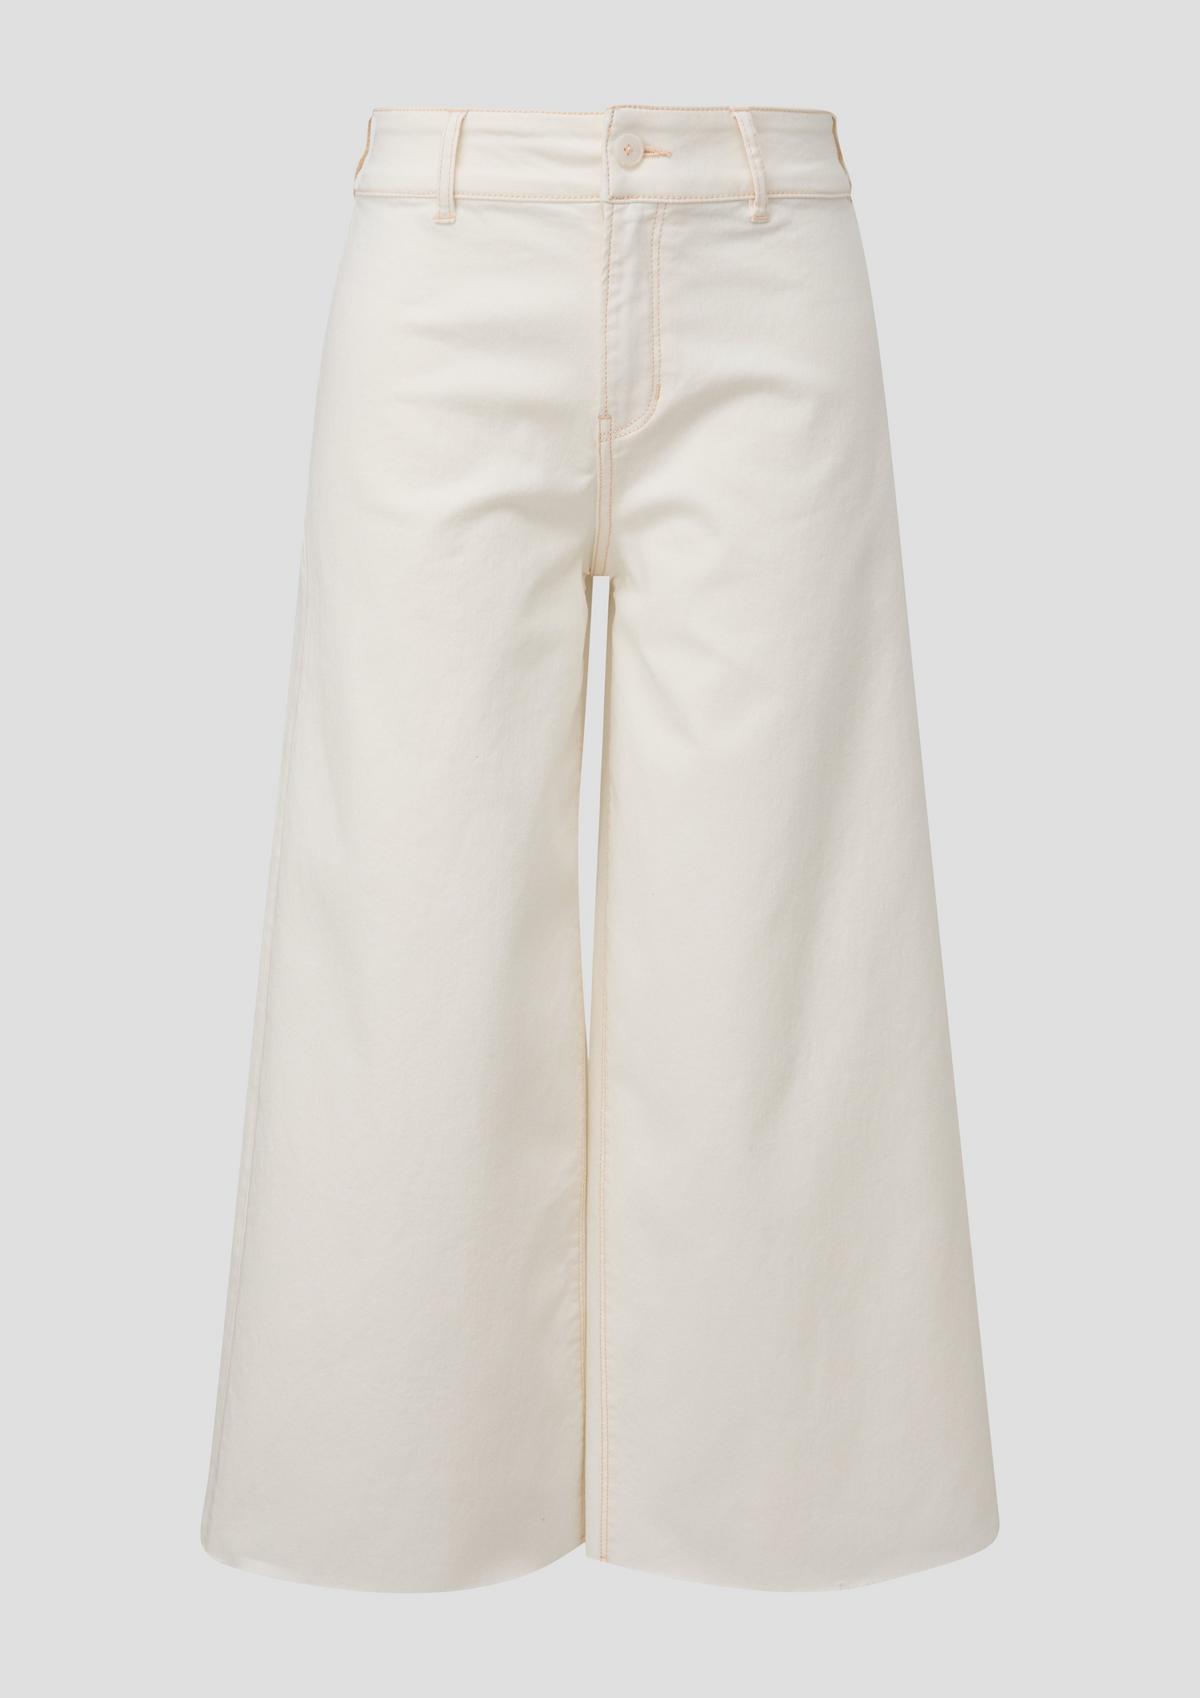 Suri culotte jeans / regular fit / mid rise / wide leg - white | s 